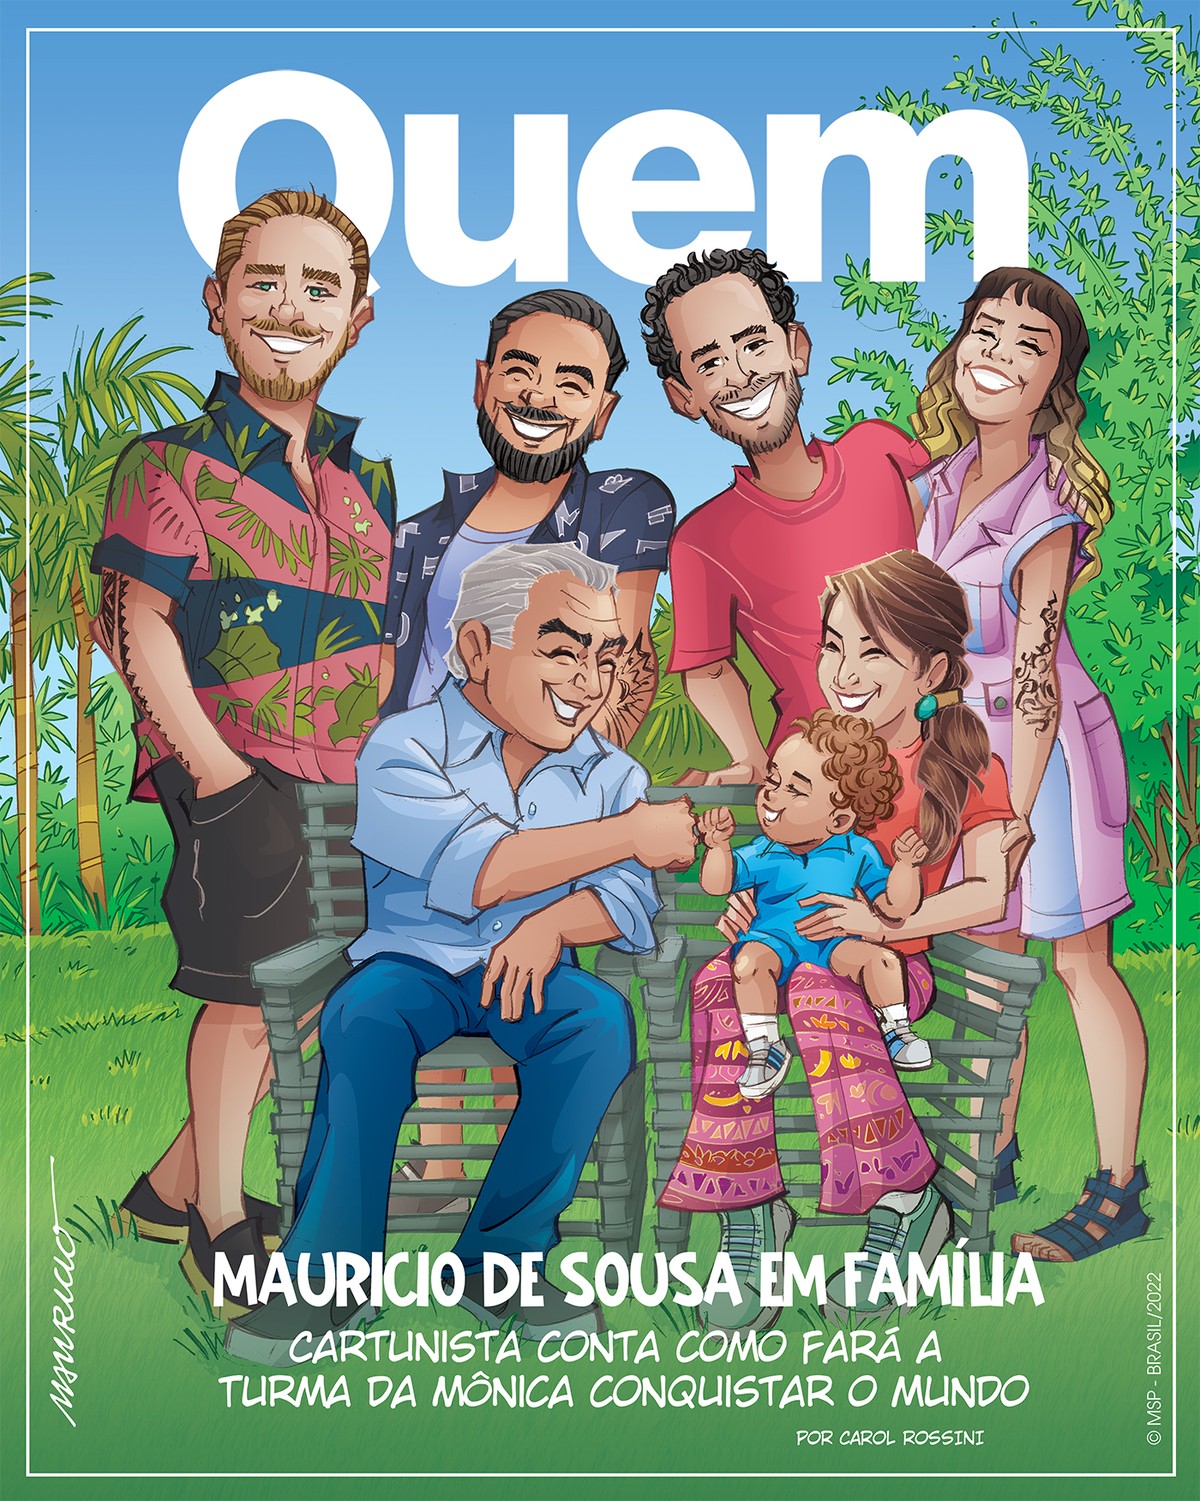 Mauricio de Sousa aposta em anime da Turma da Mônica Jovem - 28/10/2019 -  UOL Economia